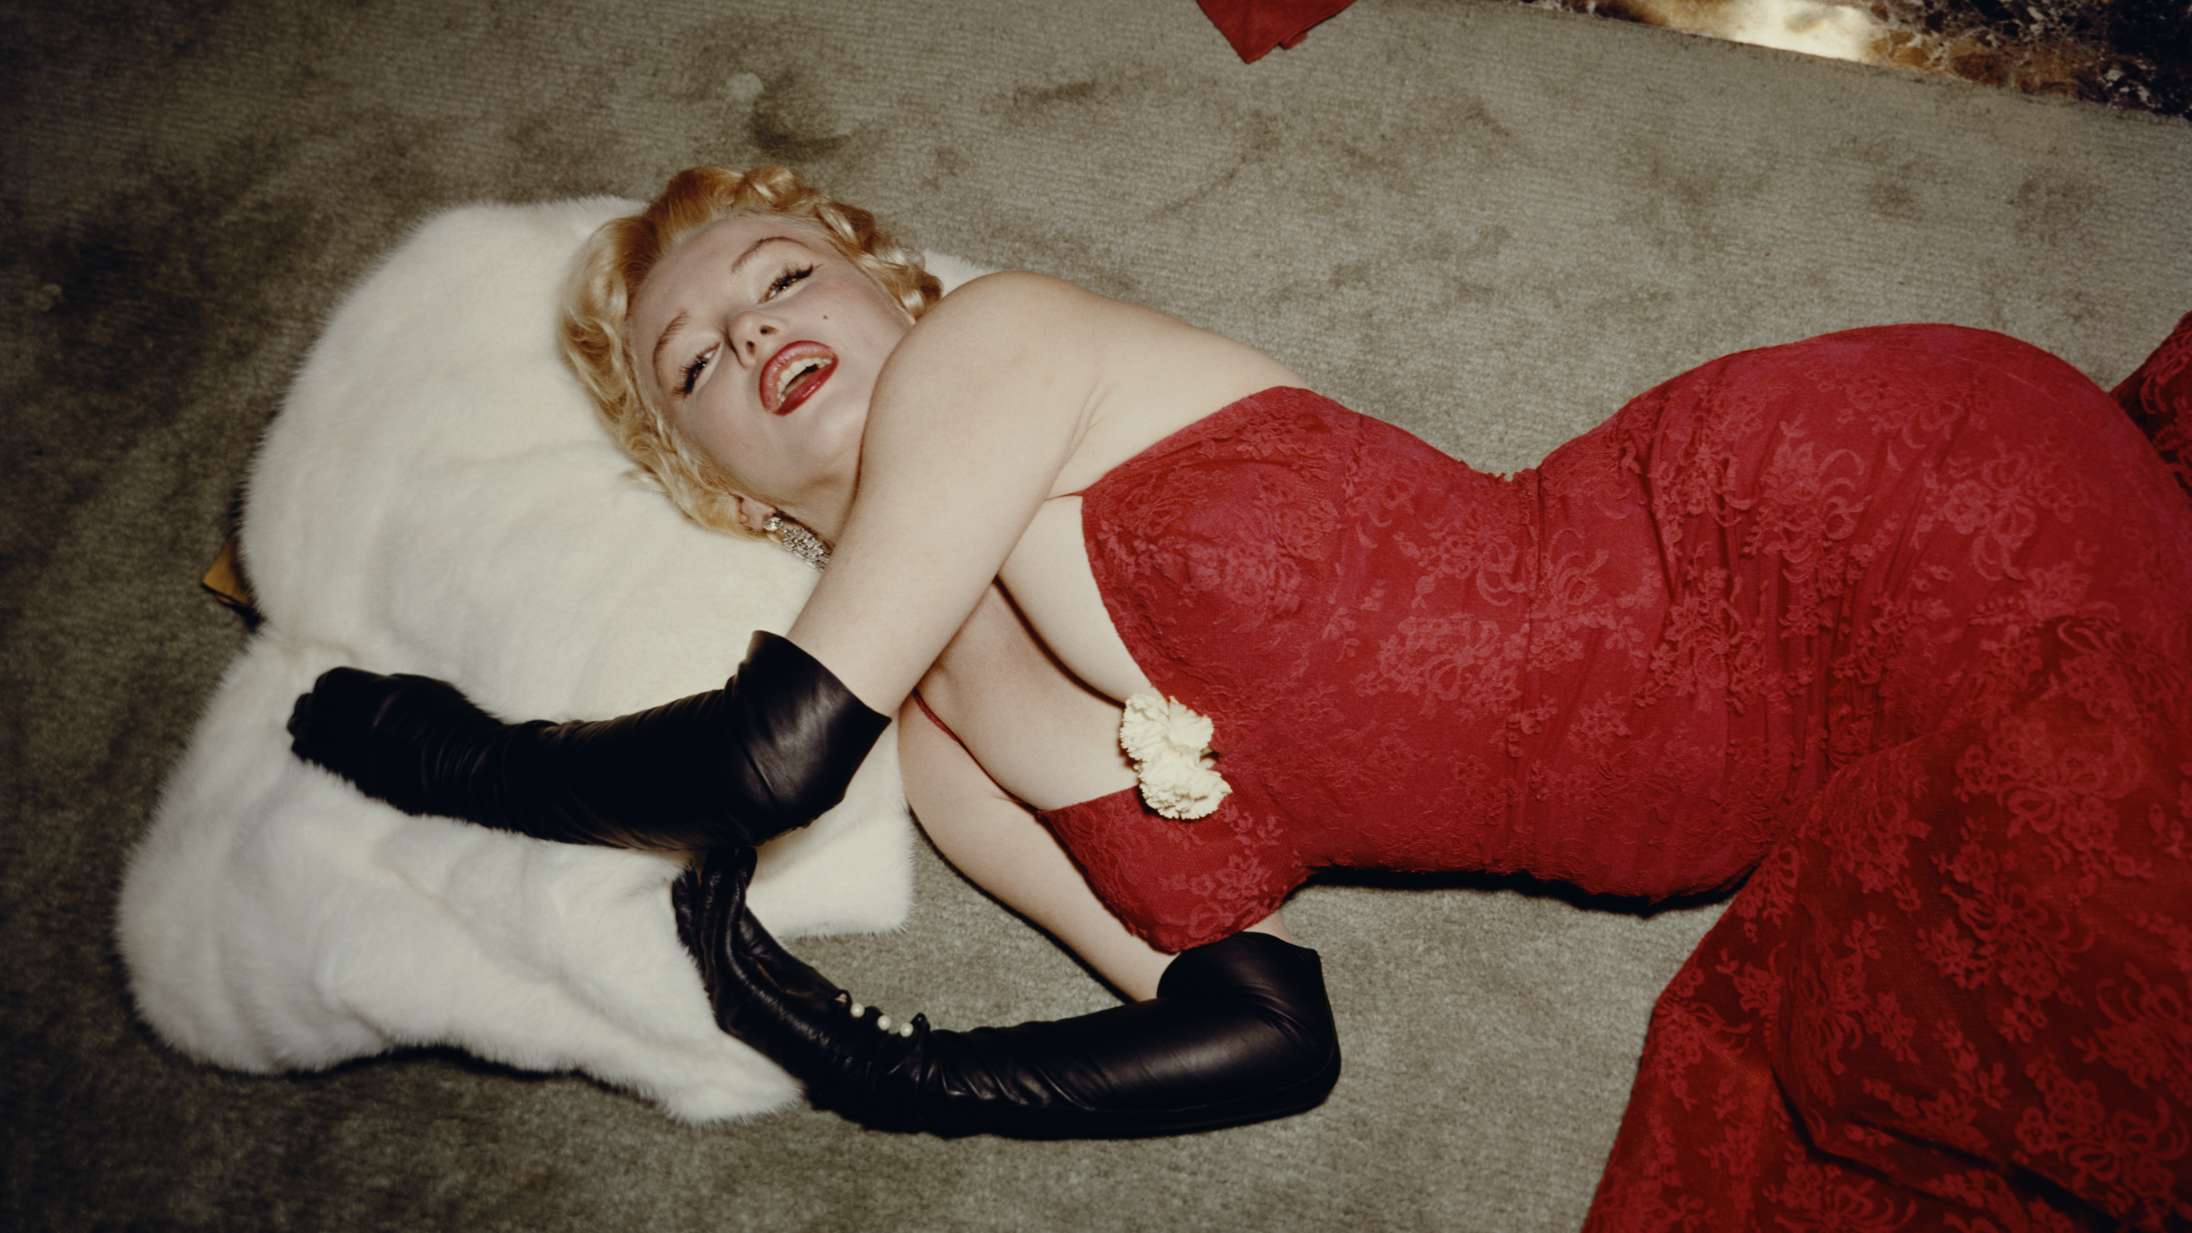 60 år efter hendes død er det tid til at fortælle Marilyn Monroes historie rigtigt